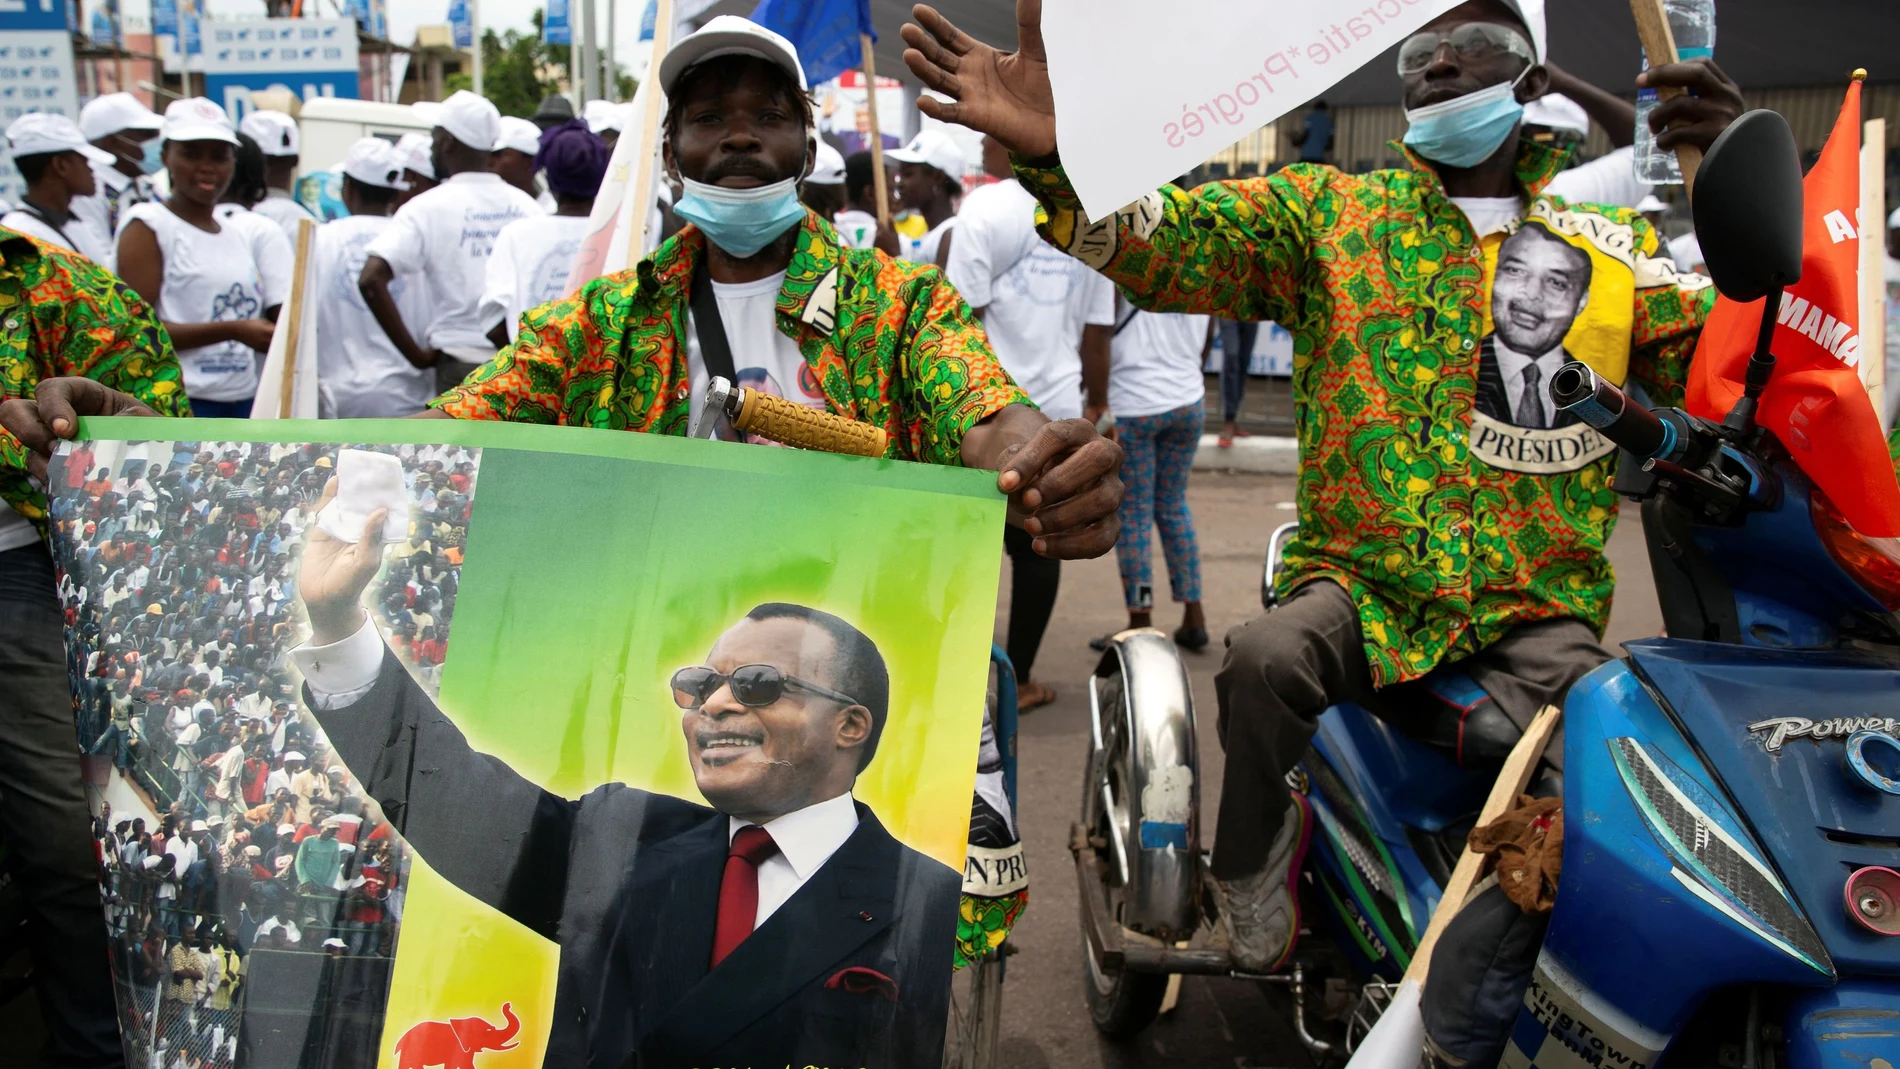 Simpatizantes asisten a una manifestación en apoyo de la reelección del presidente Denis Sassou Nguesso, en Brazzaville, República del Congo, el 19 de marzo de 2021